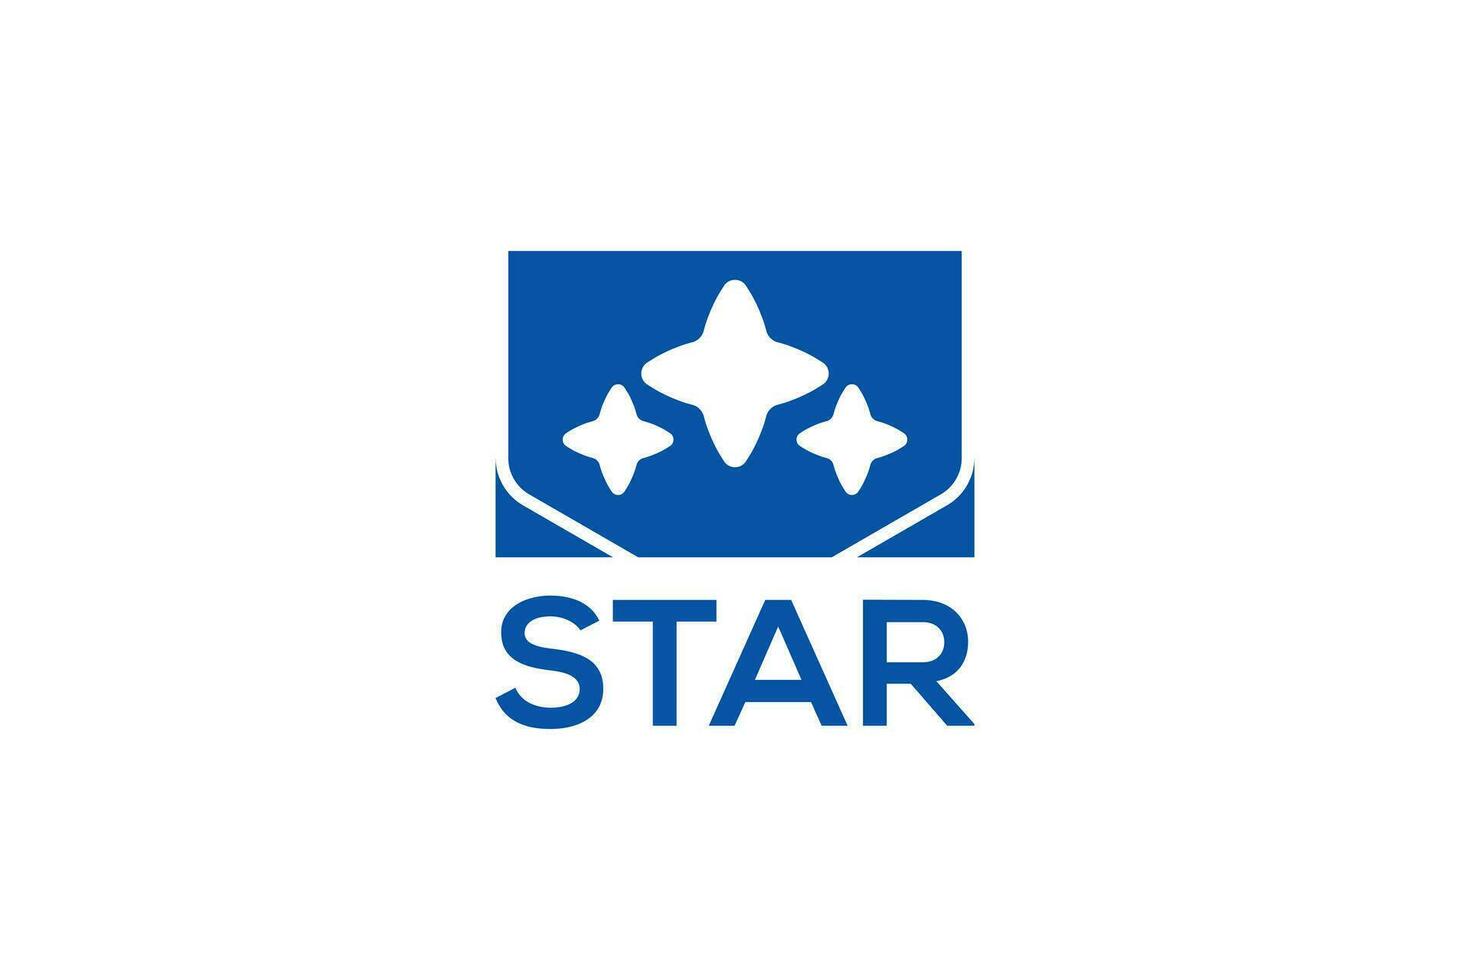 Star logo design vector template